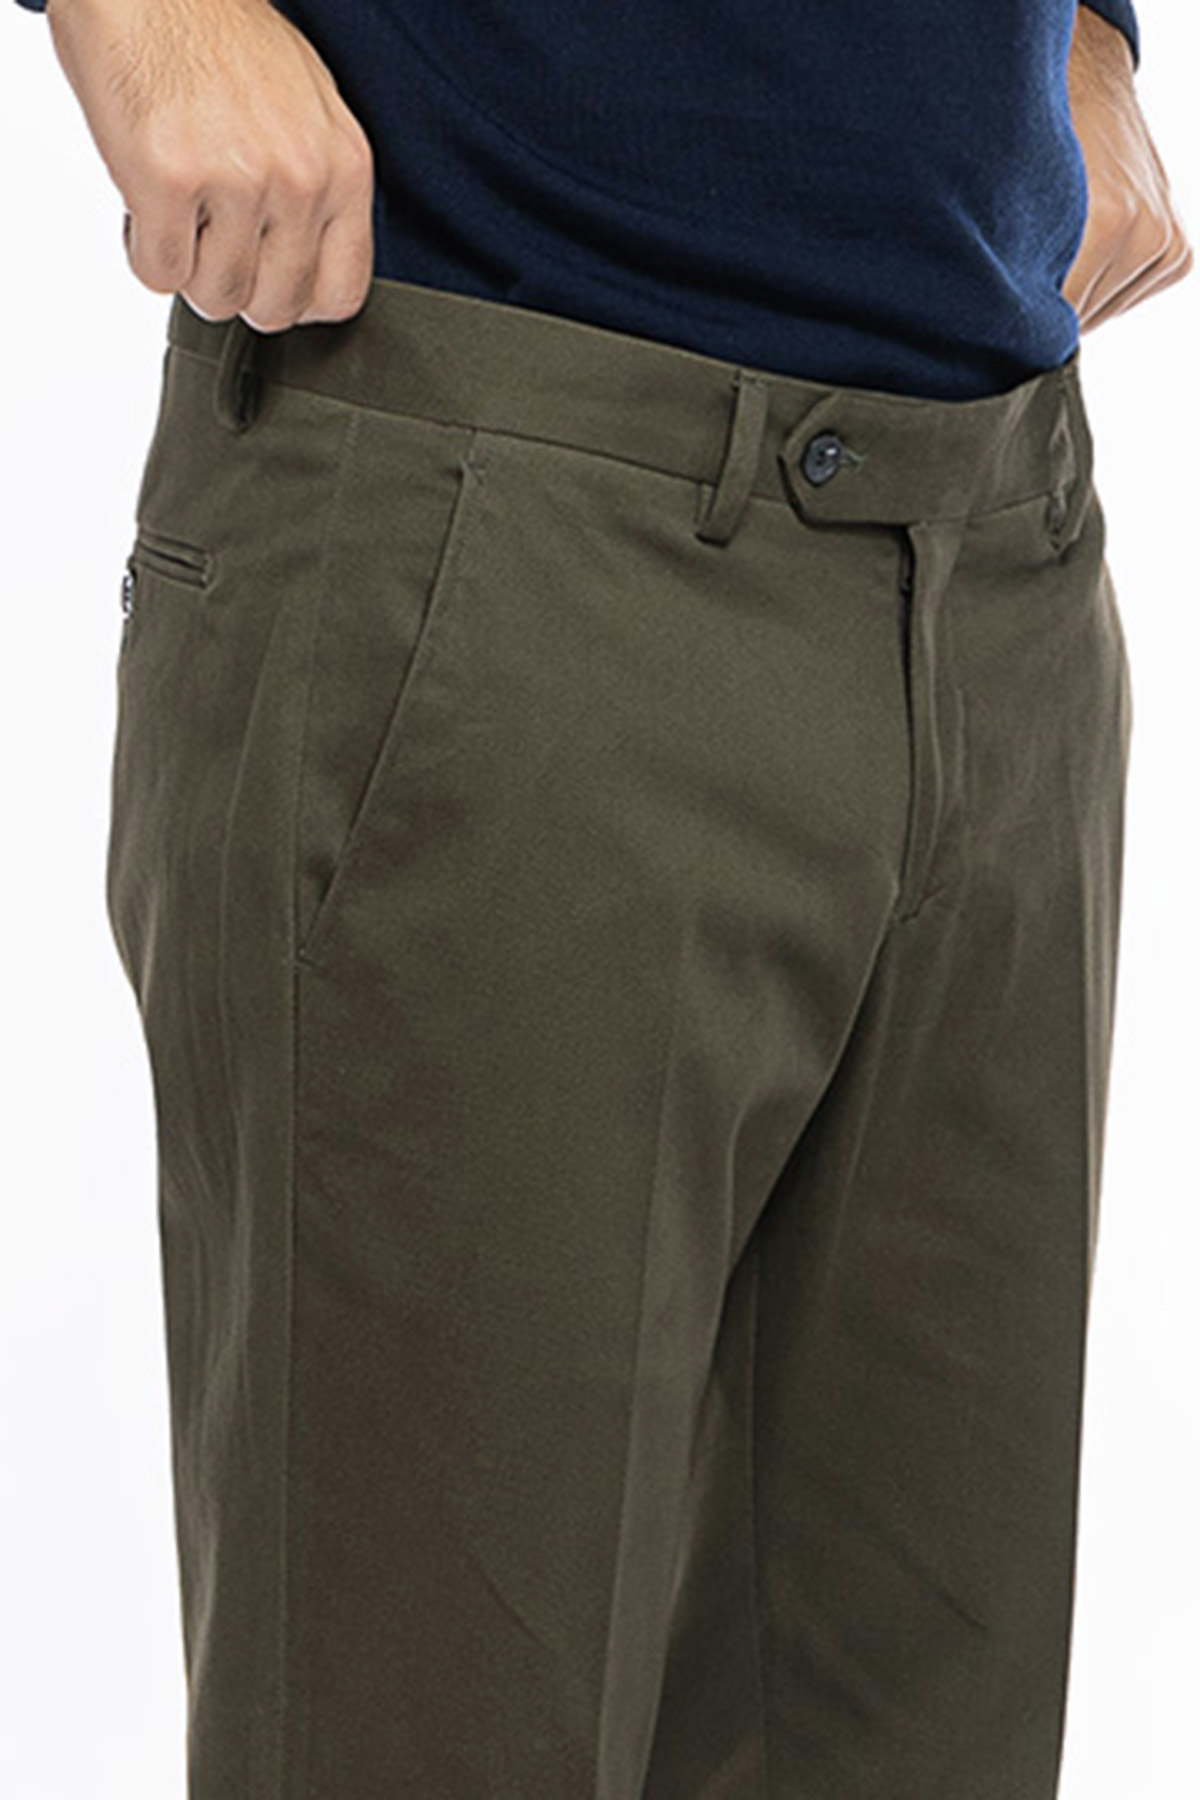 Pantalone uomo verde militare tasca america in cotone slim fit con risvolto di 5cm